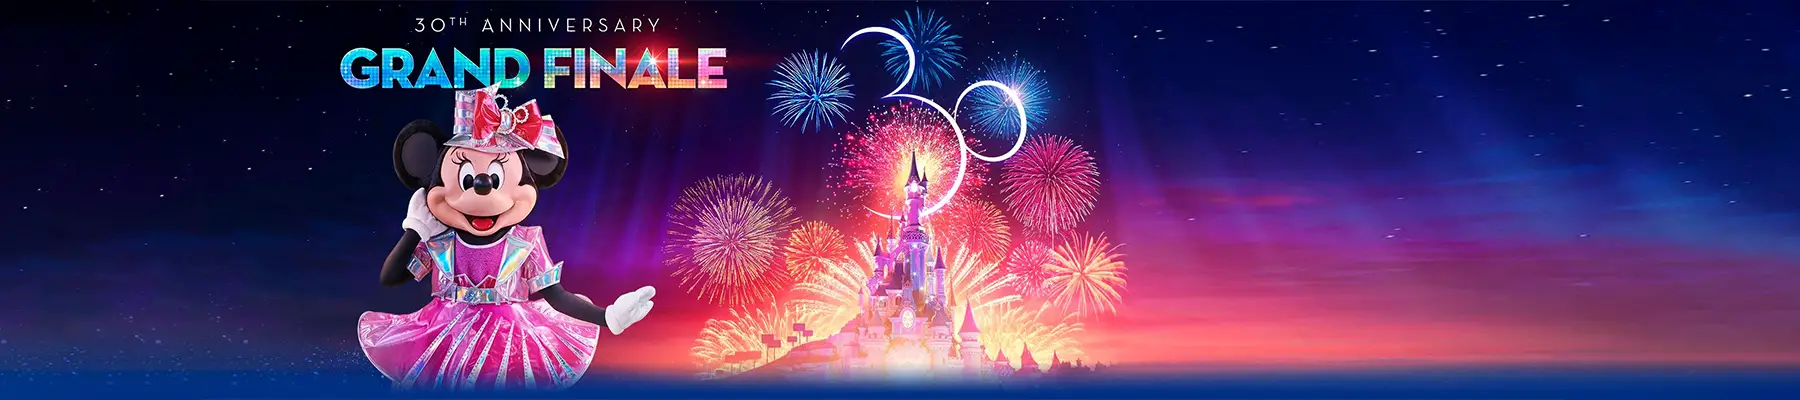 Disneyland Paris Grand Finale Header